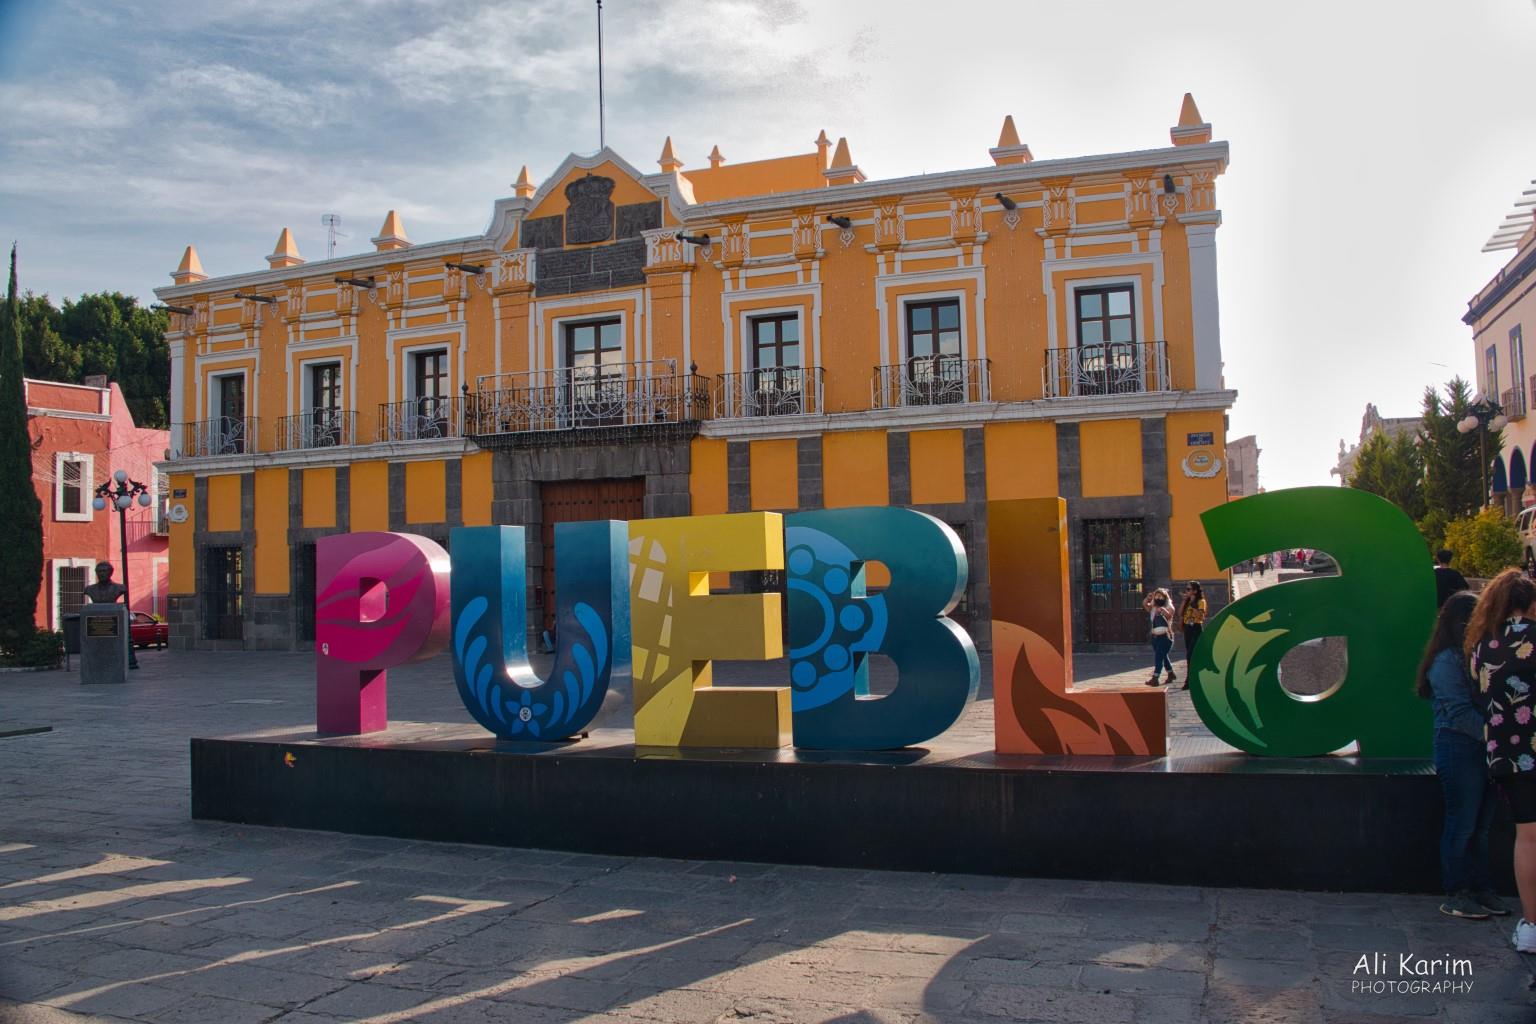 Puebla, Mexico Dec 2020, Puebla Teatro, with inscription “The good art ennobles people”